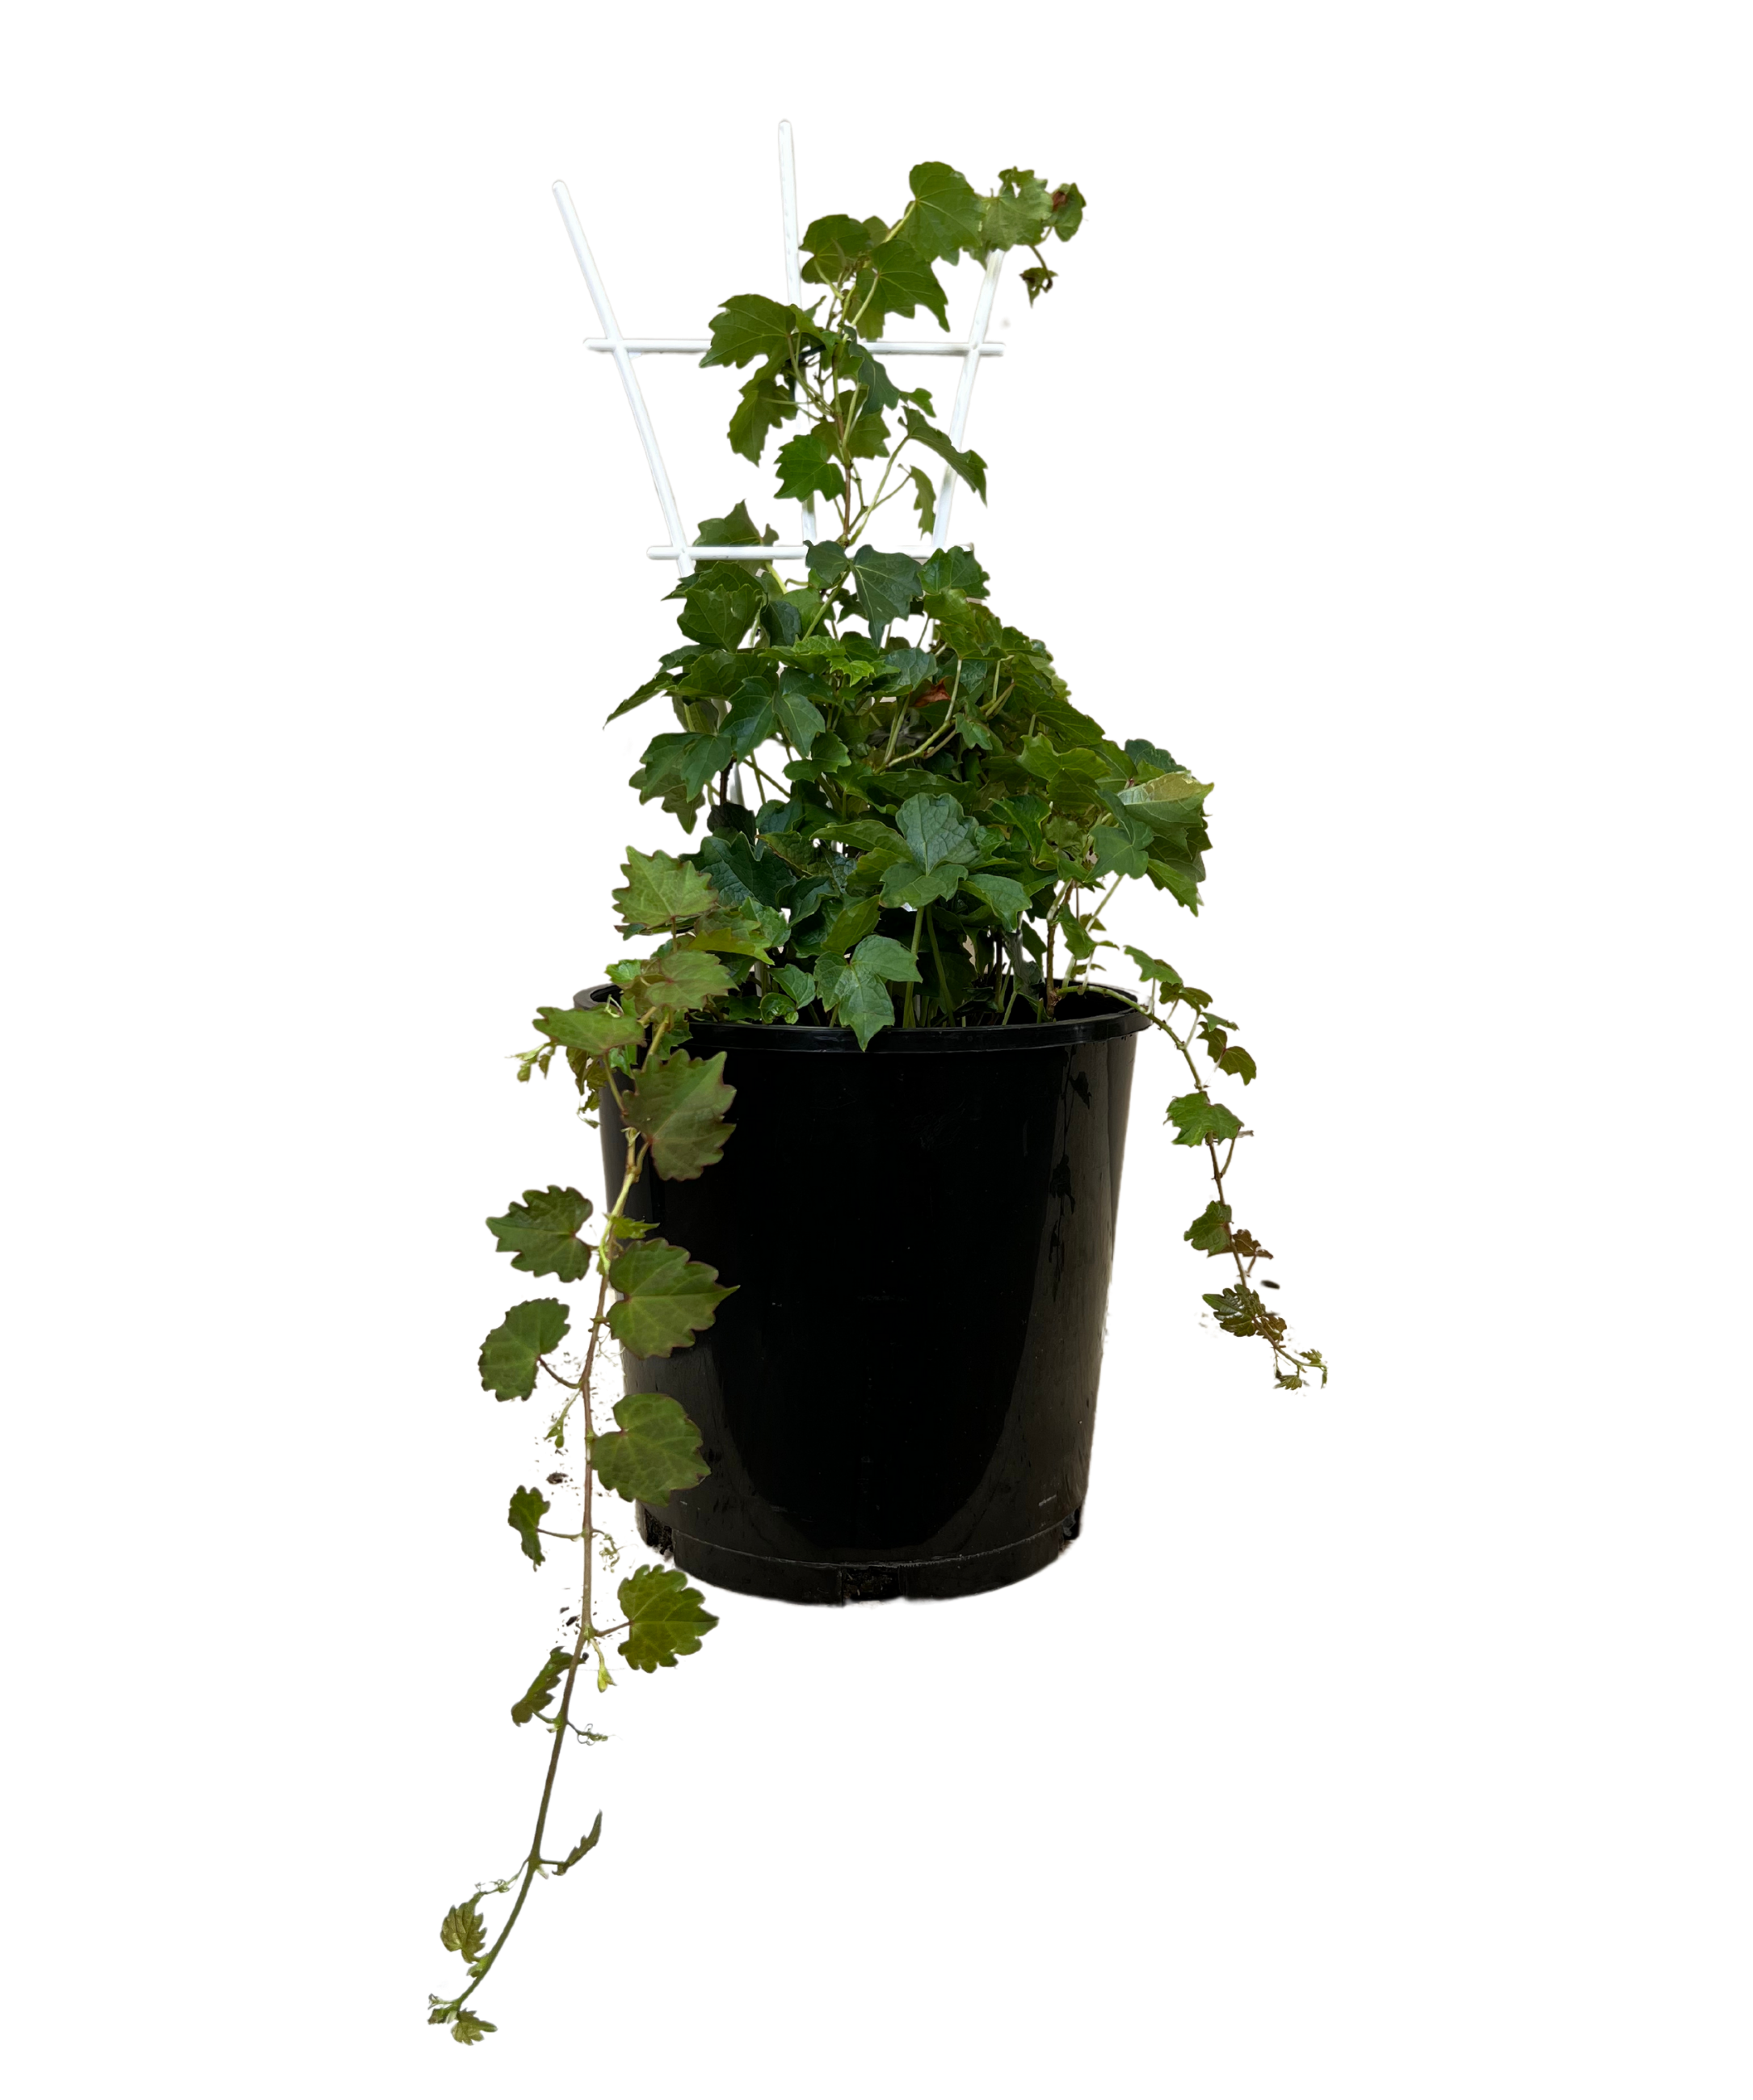 Boston Ivy - Parthenocissus Tricuspidata